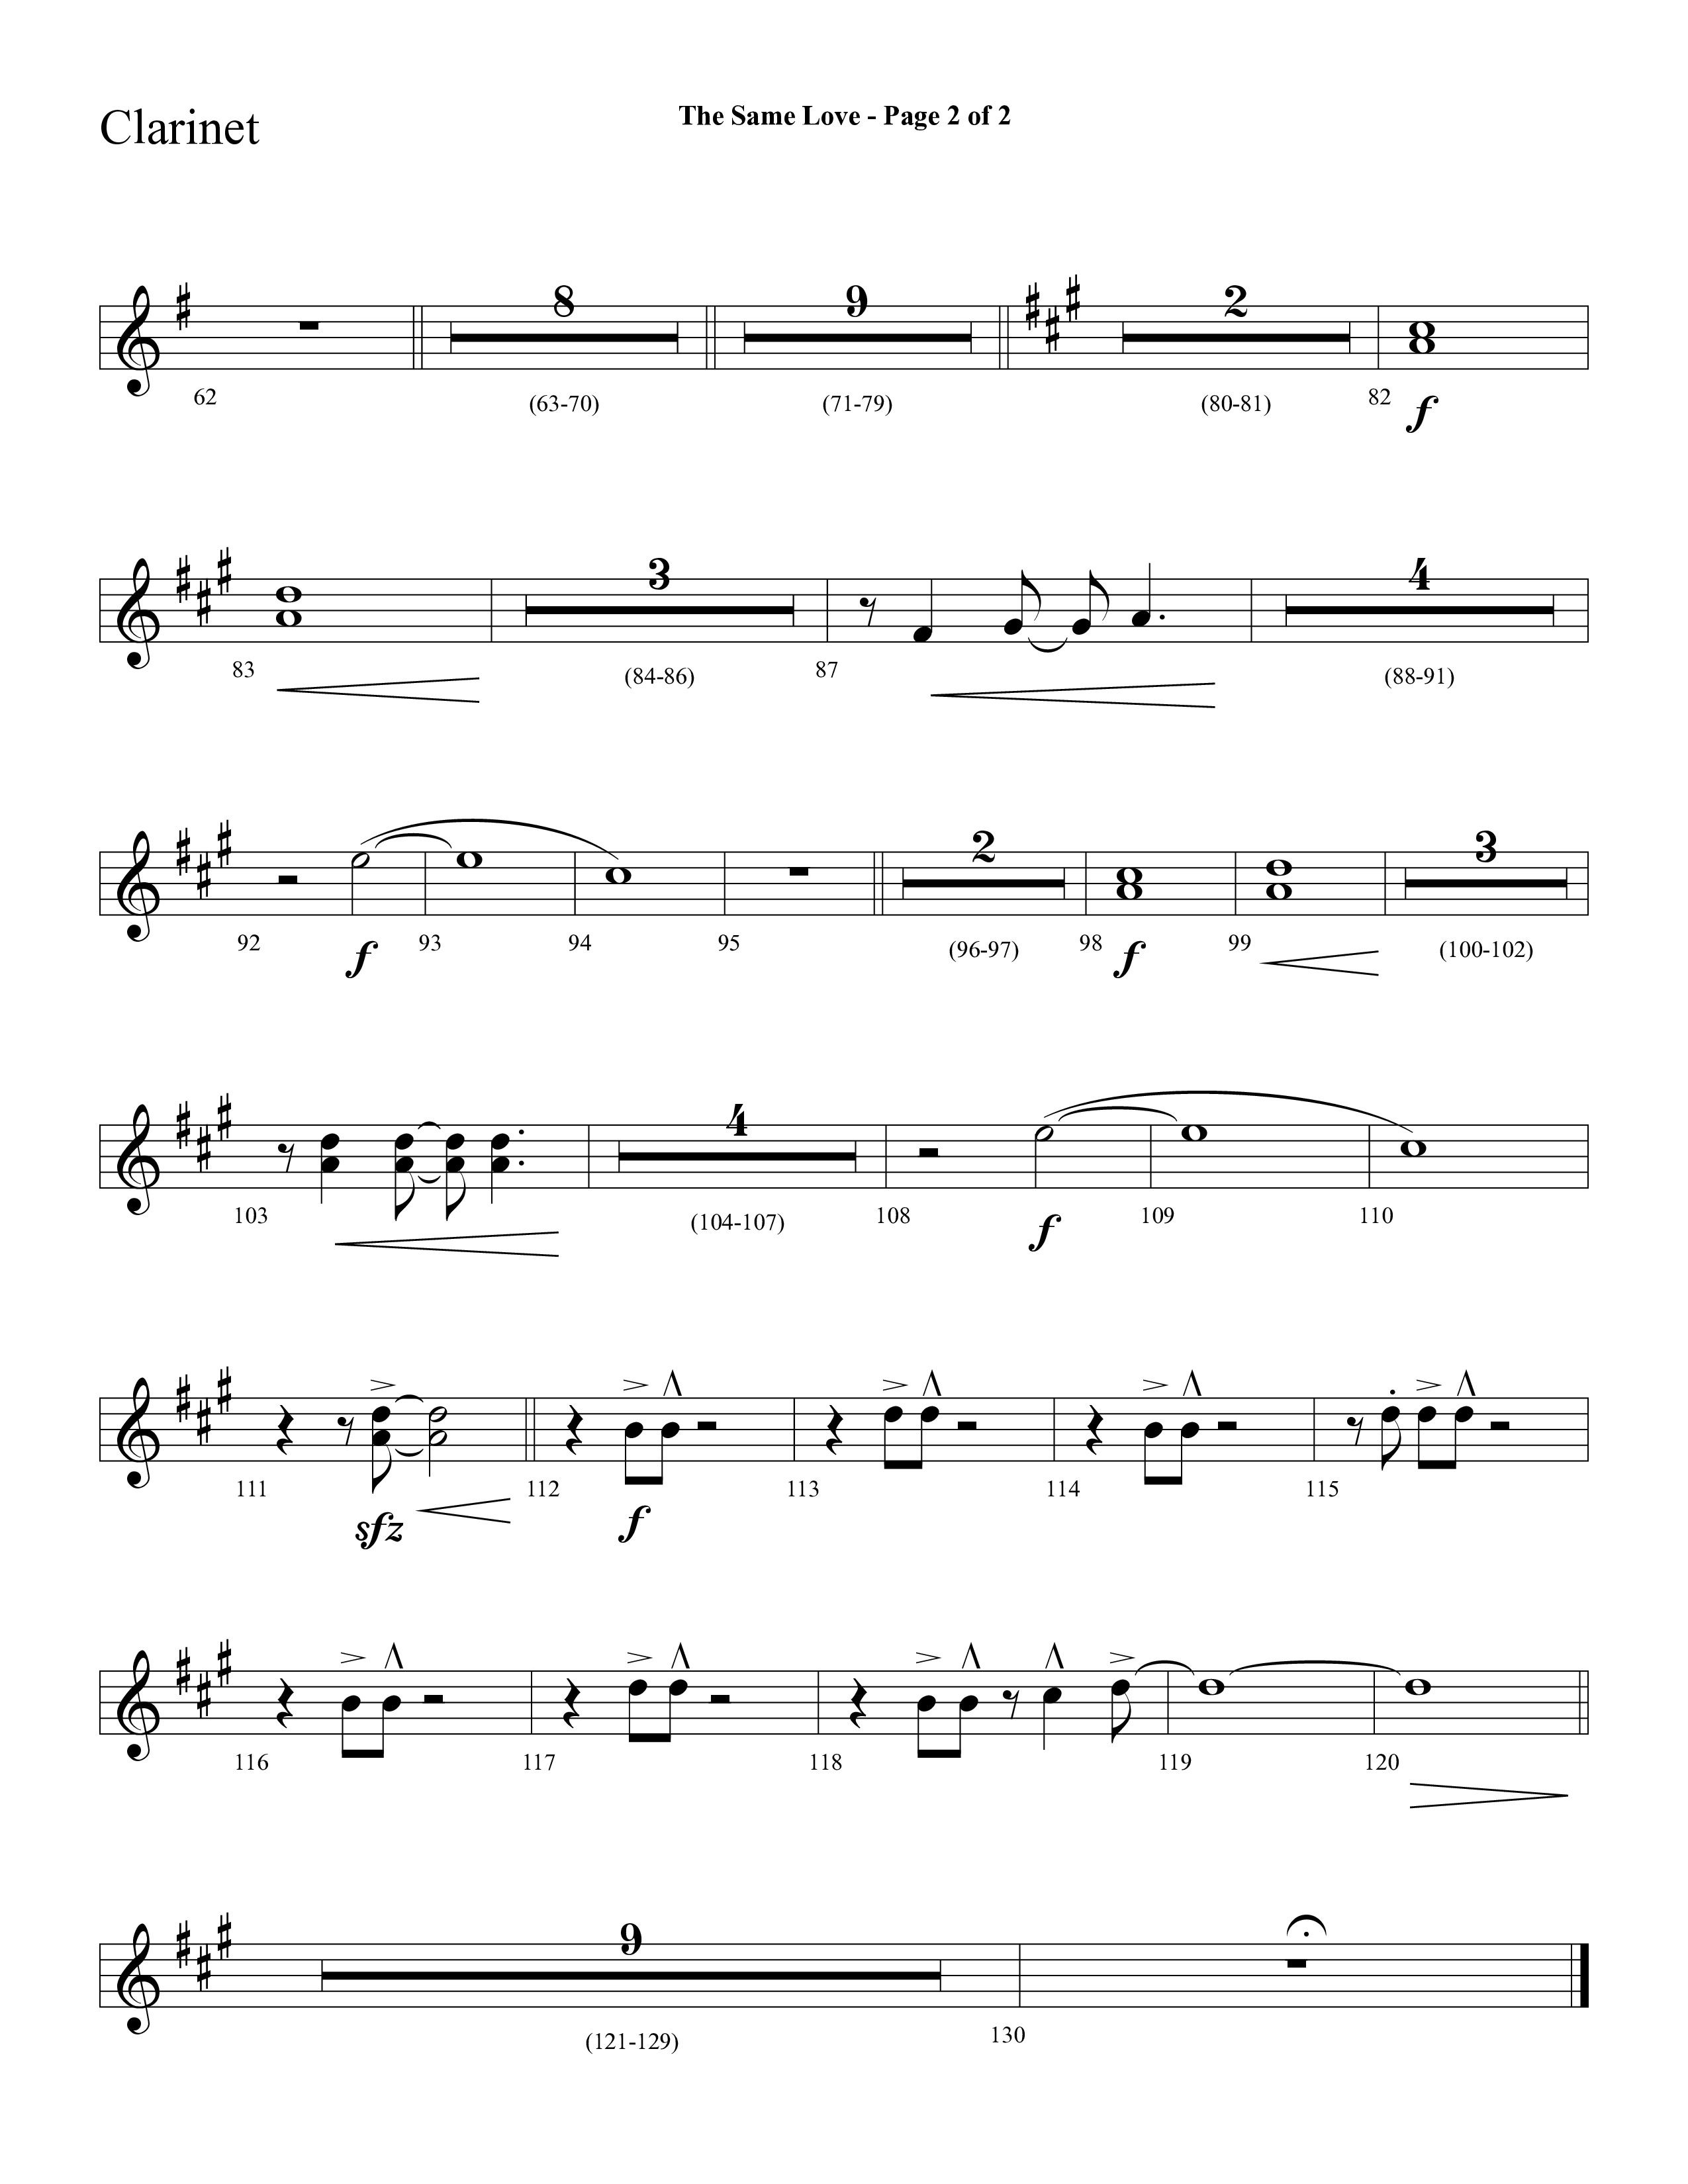 The Same Love (Choral Anthem SATB) Clarinet 1/2 (Lifeway Choral / Arr. Cliff Duren)